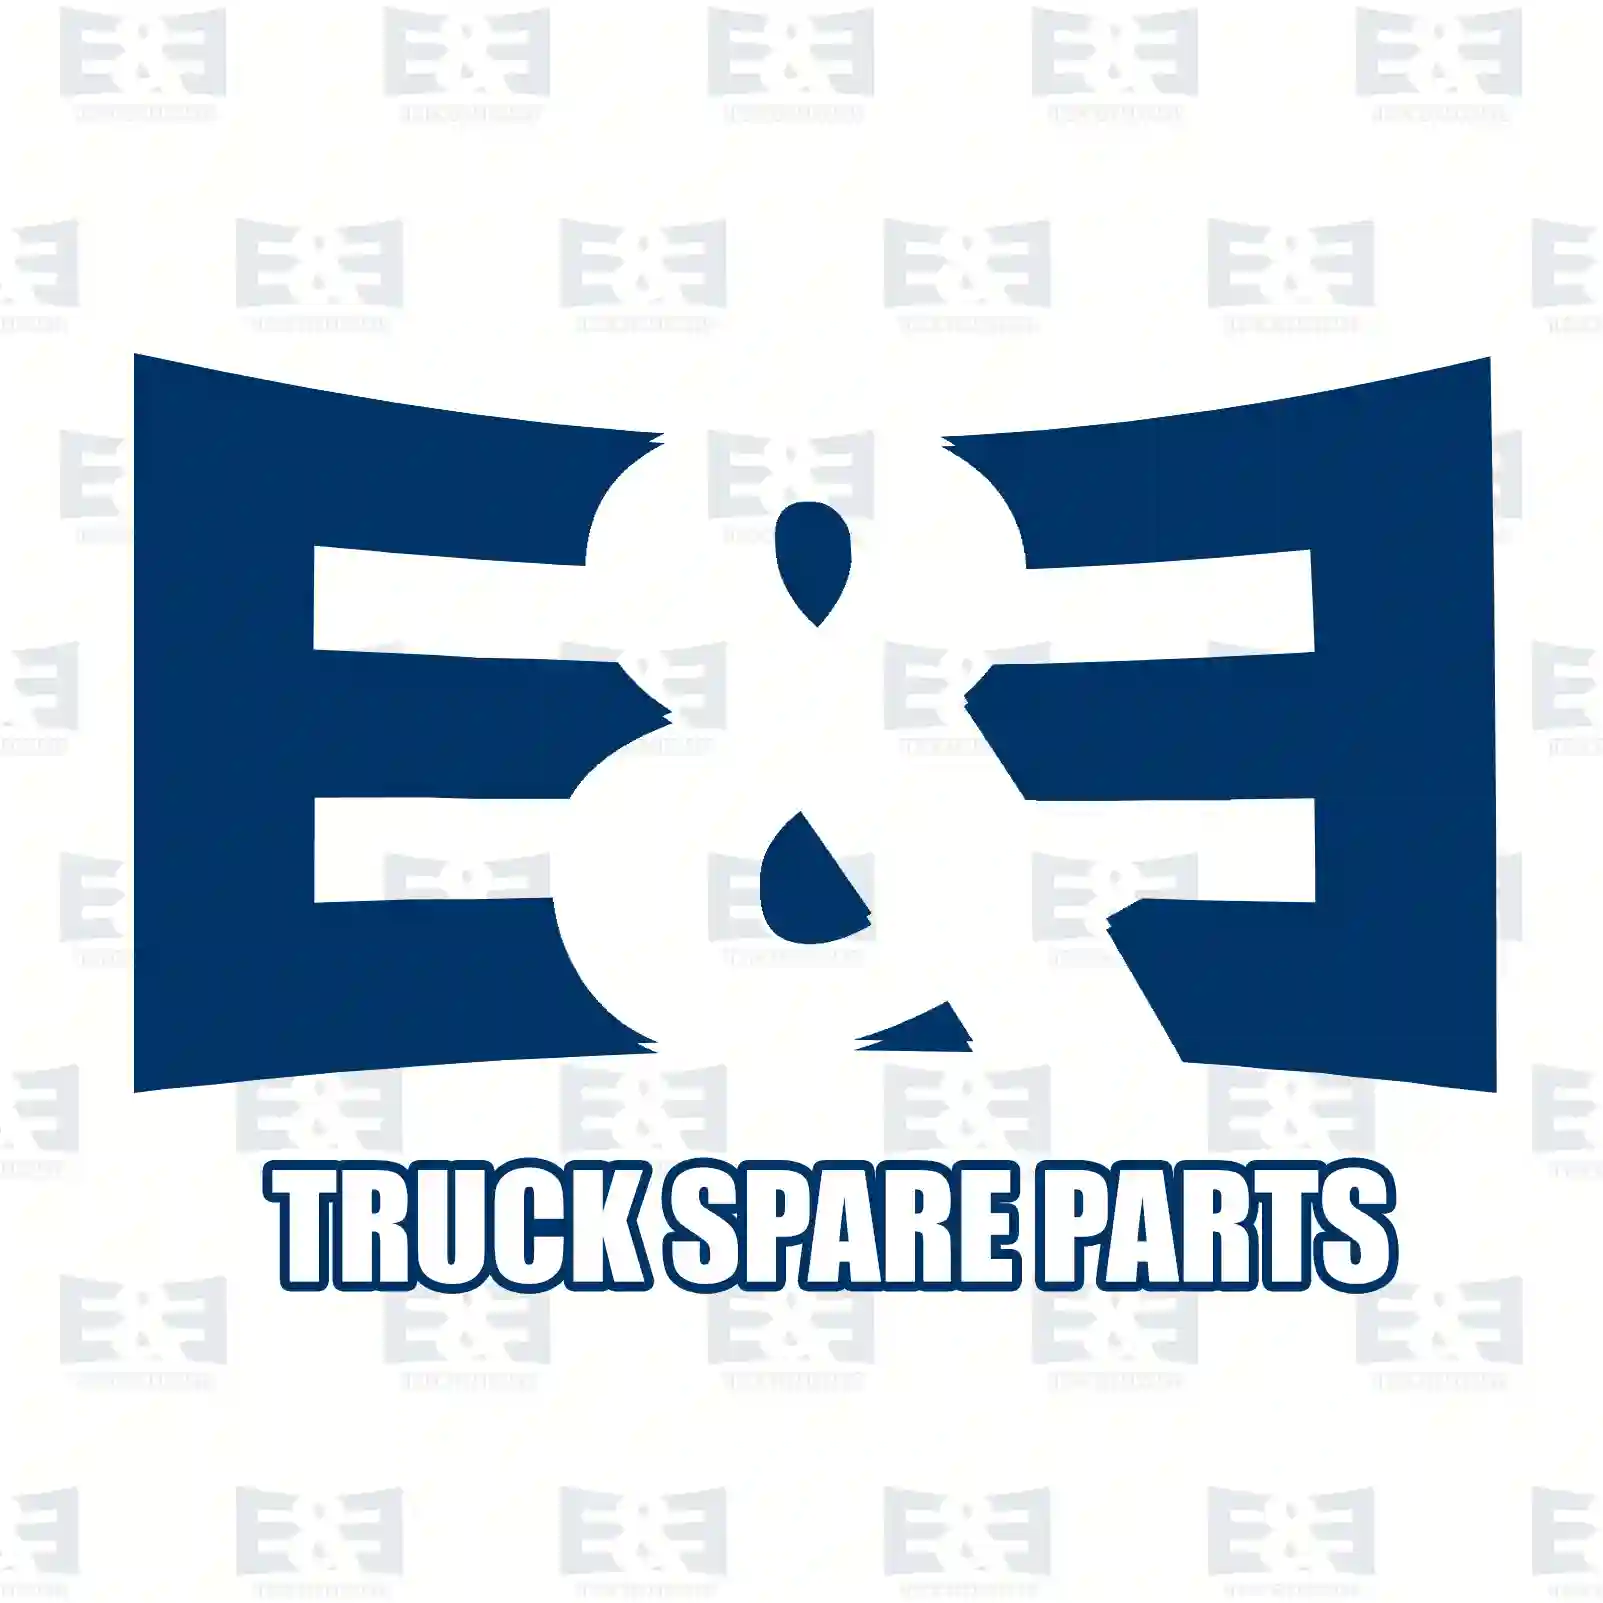 Cabin shock absorber, 2E2276643, 5010052404, 5010130534, 5010137139, 5010460115 ||  2E2276643 E&E Truck Spare Parts | Truck Spare Parts, Auotomotive Spare Parts Cabin shock absorber, 2E2276643, 5010052404, 5010130534, 5010137139, 5010460115 ||  2E2276643 E&E Truck Spare Parts | Truck Spare Parts, Auotomotive Spare Parts